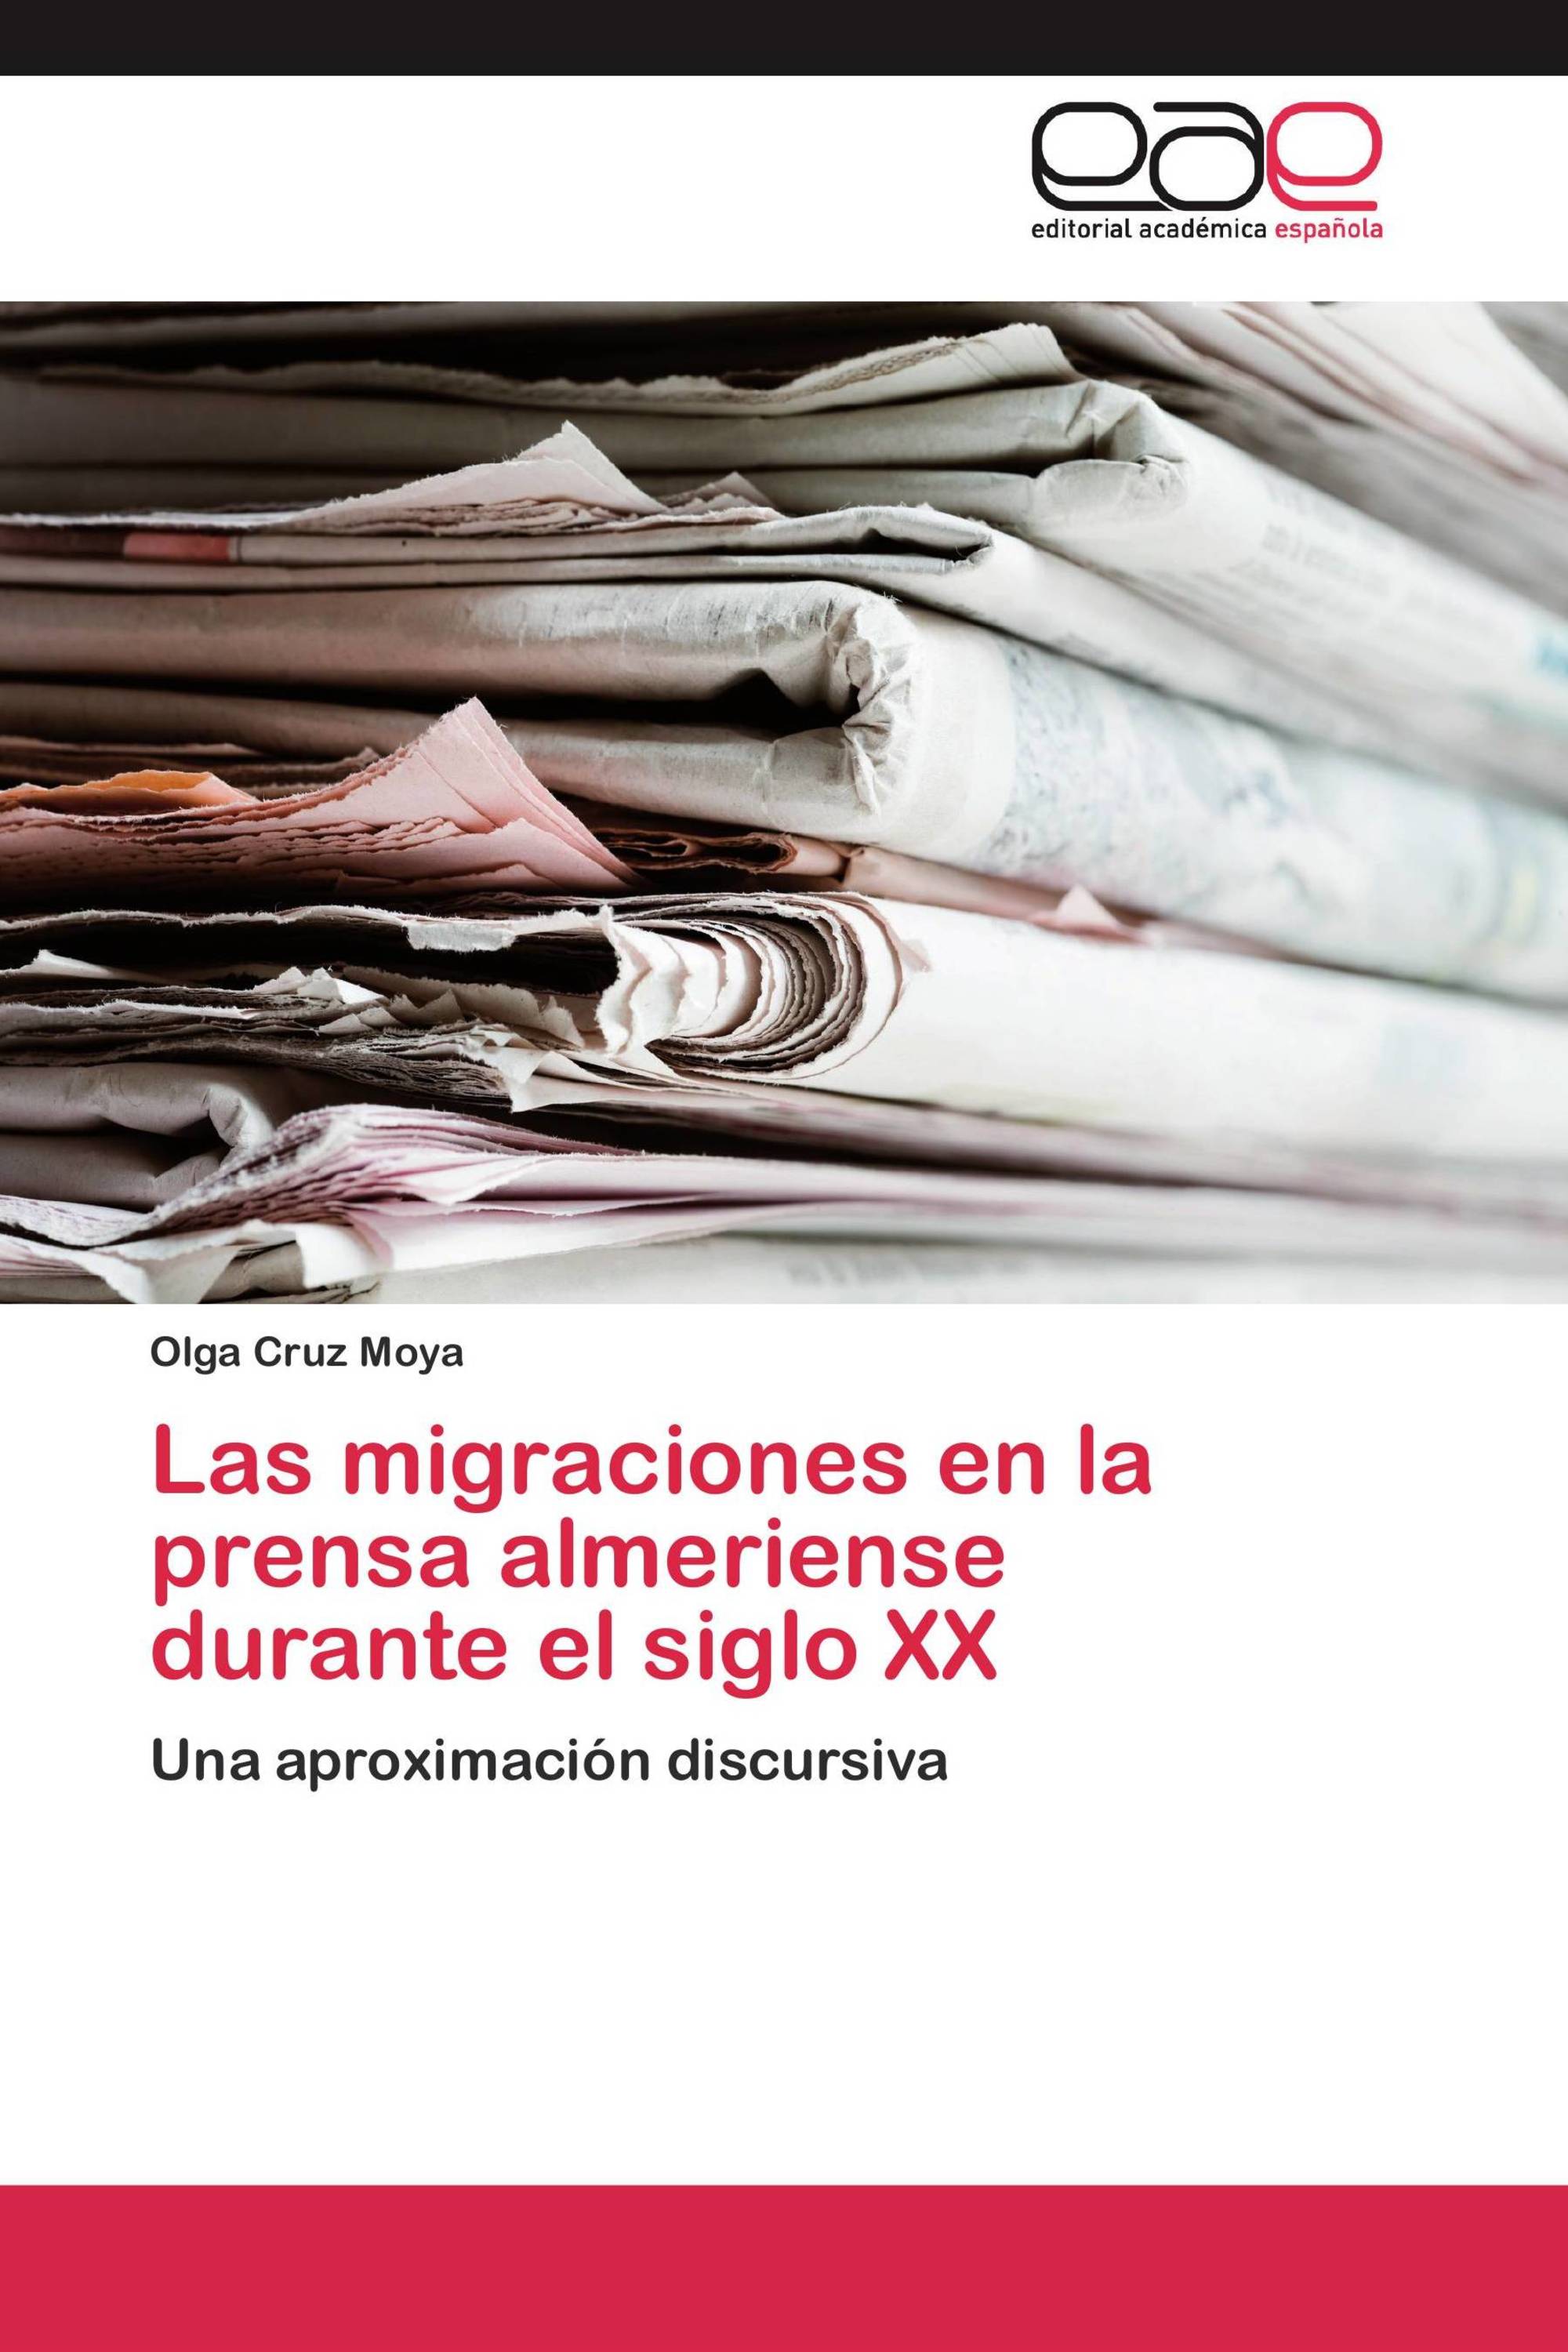 Las migraciones en la prensa almeriense durante el siglo XX